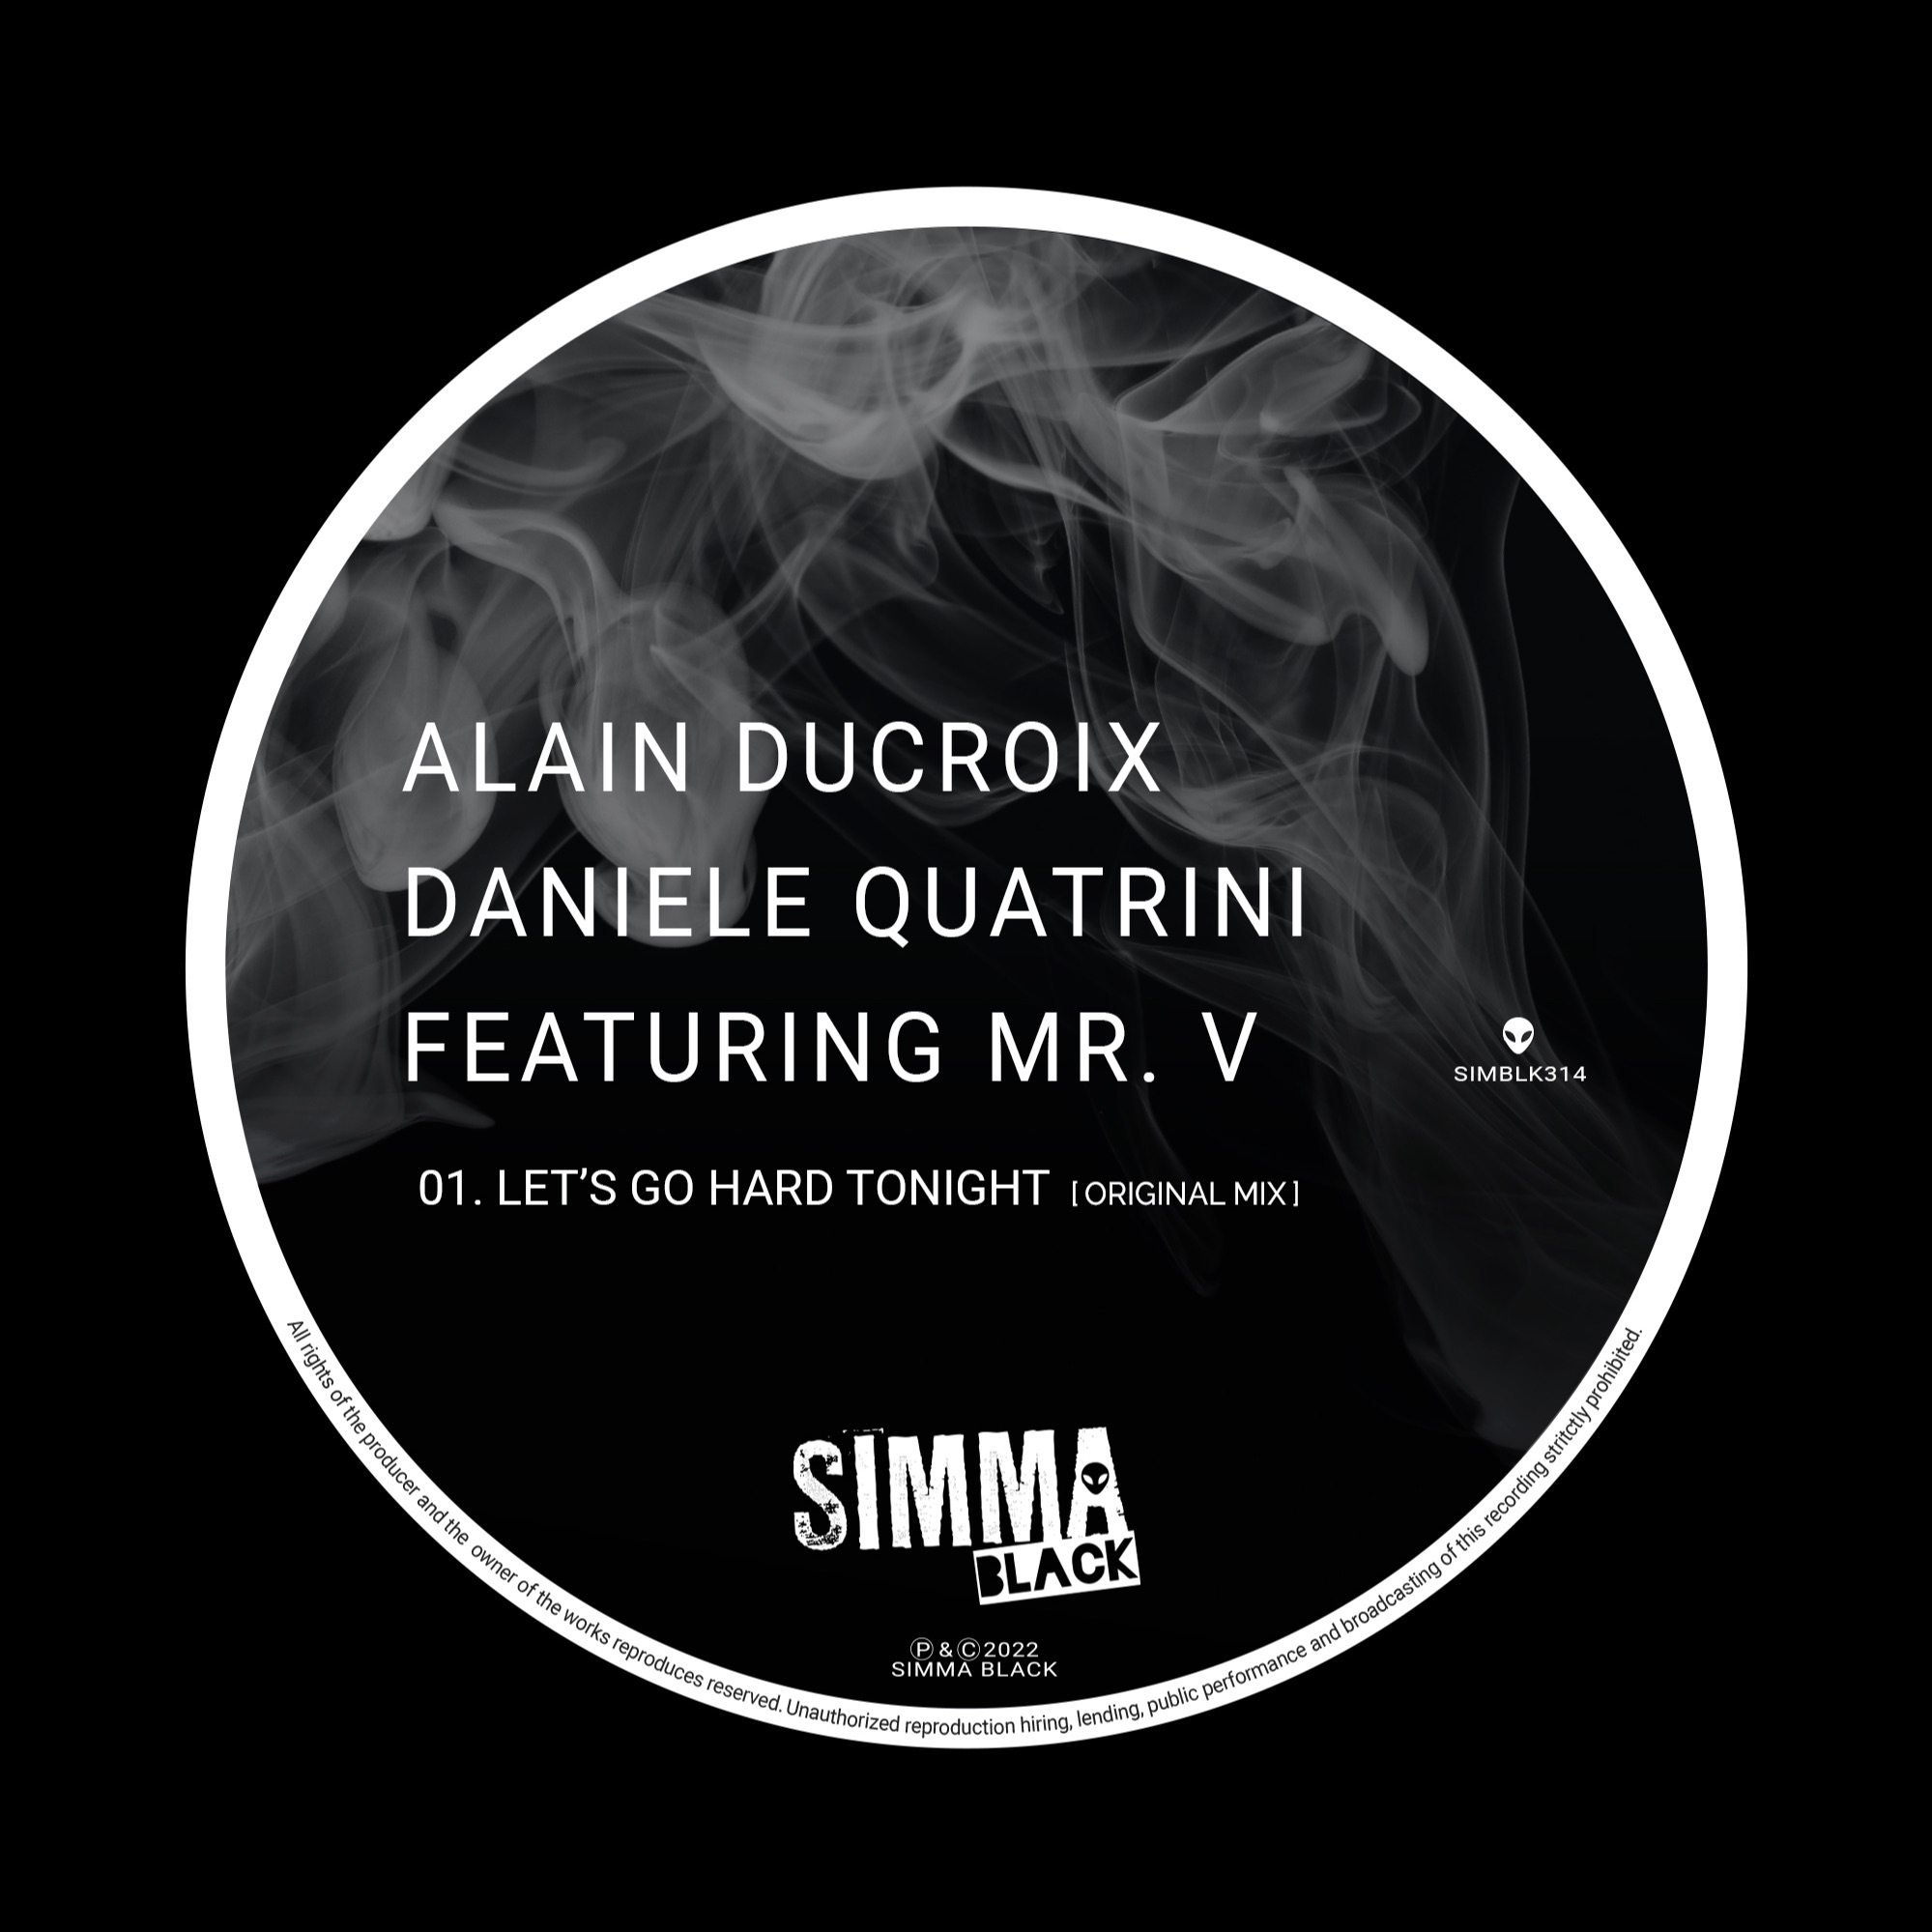 Κατεβάστε SIMBLK314 | Alain Ducroix, Daniele Quatrini Featuring Mr. V - Let's Go Hard Tonight (Original Mix)